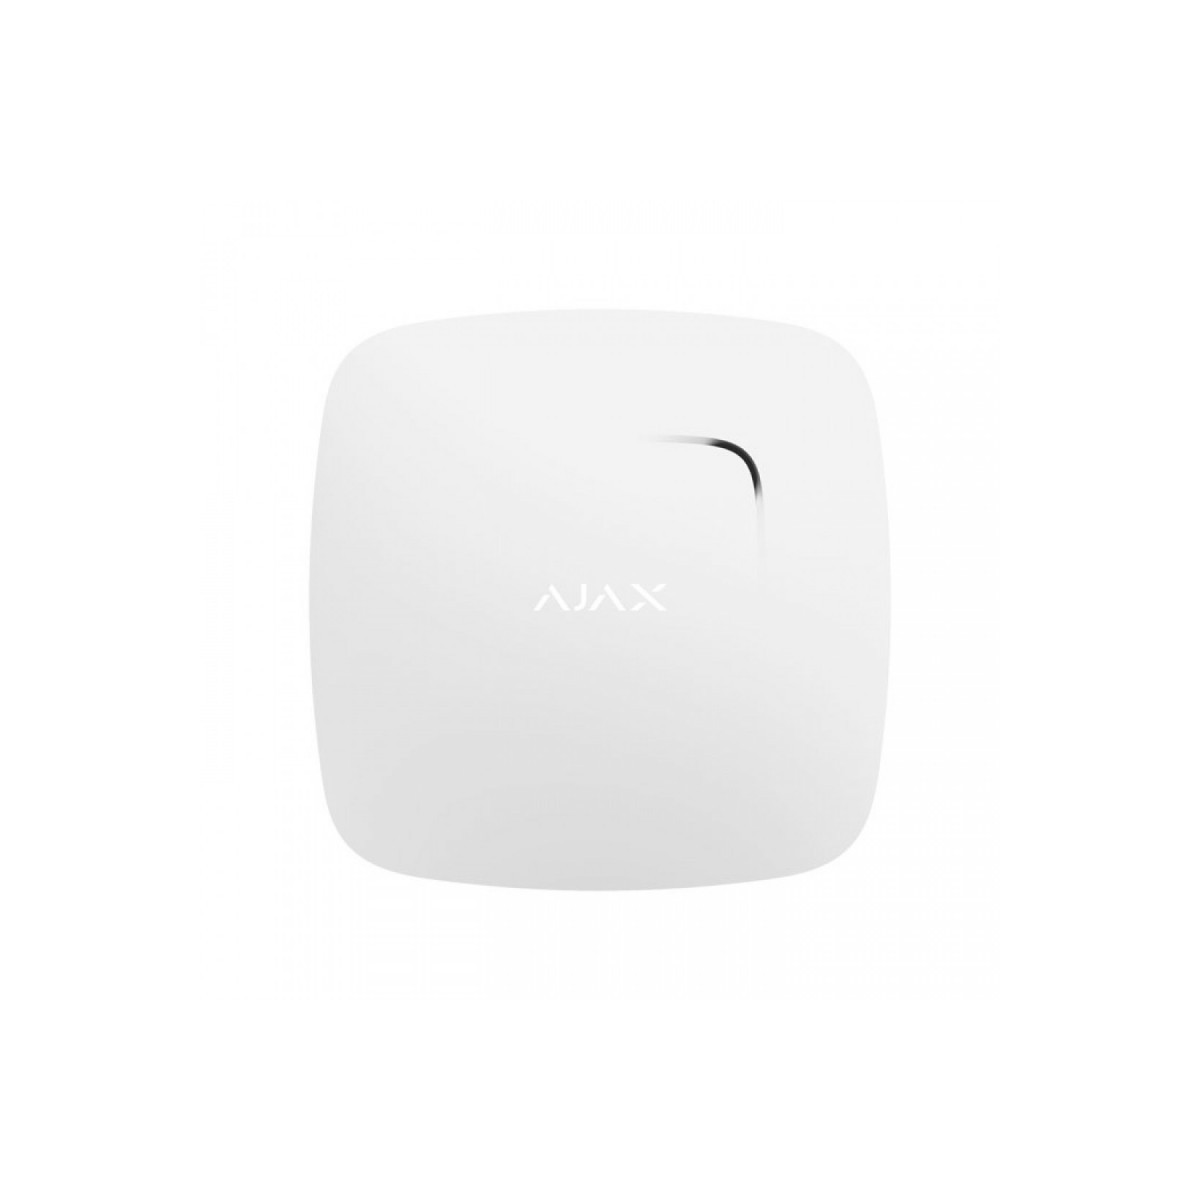 Ajax détecteur automatique de fumée et chaleur - blanc